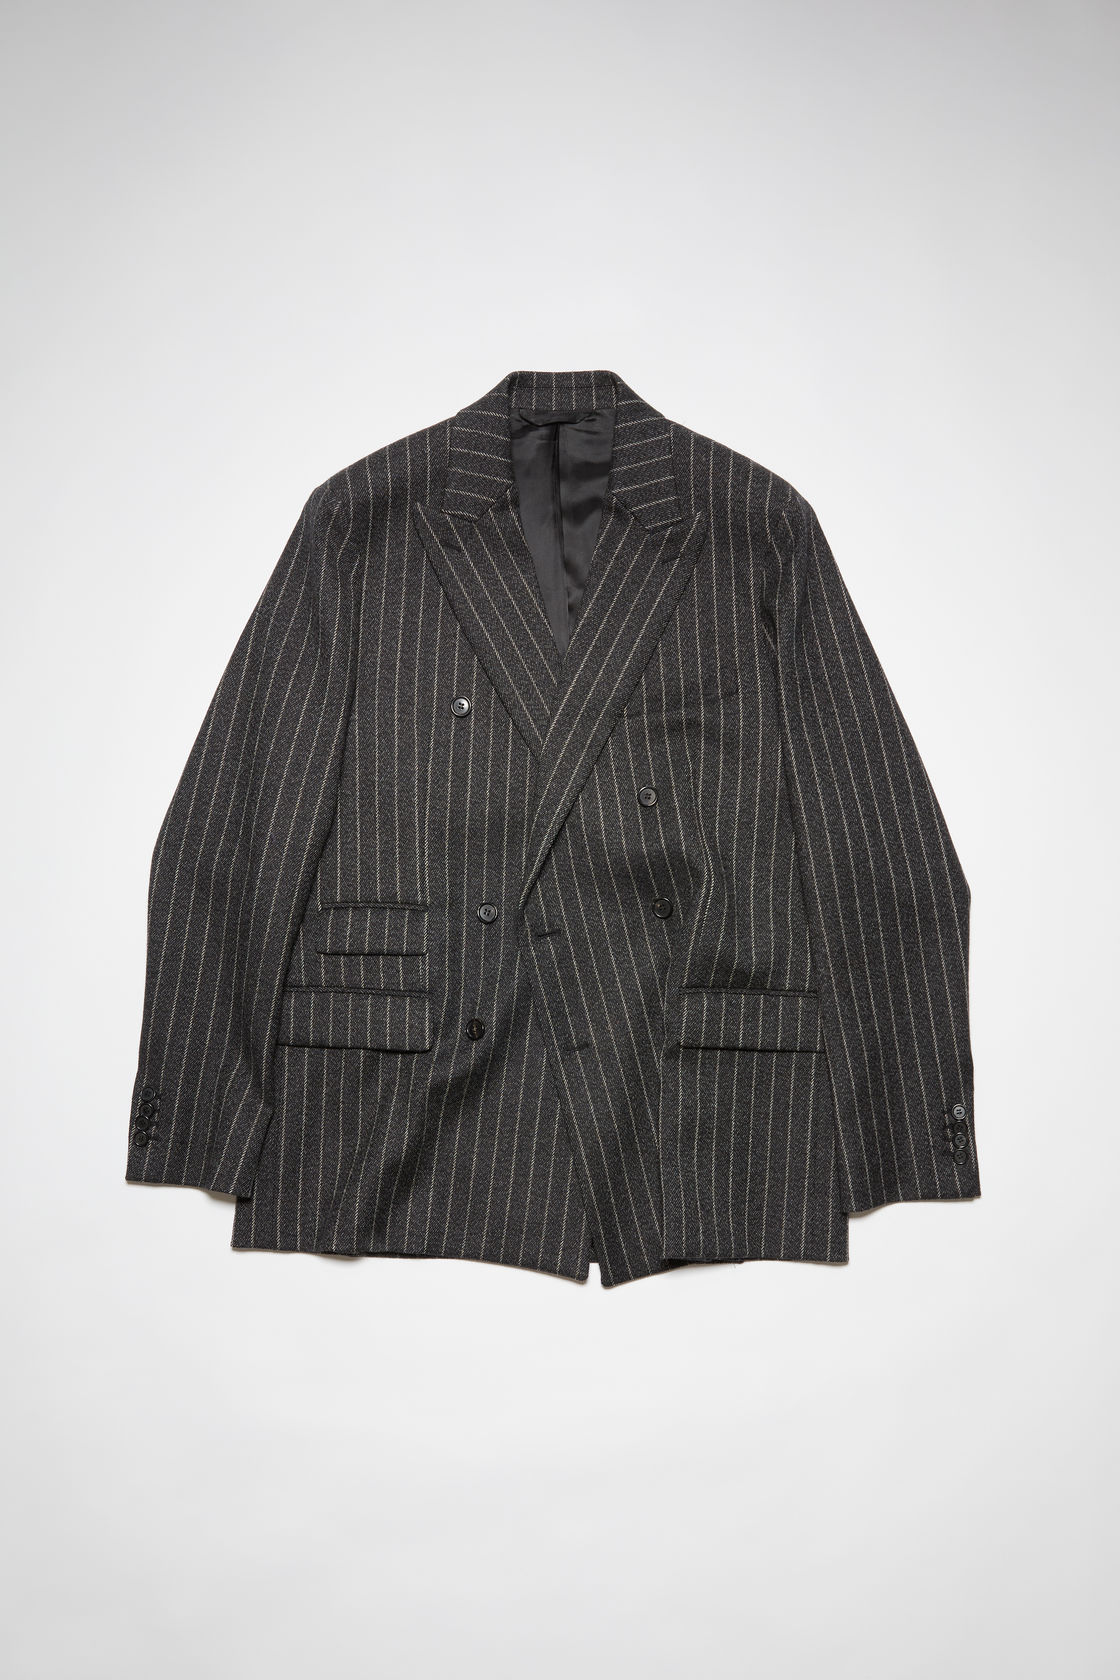 Acne Studios – Men’s Suit jackets